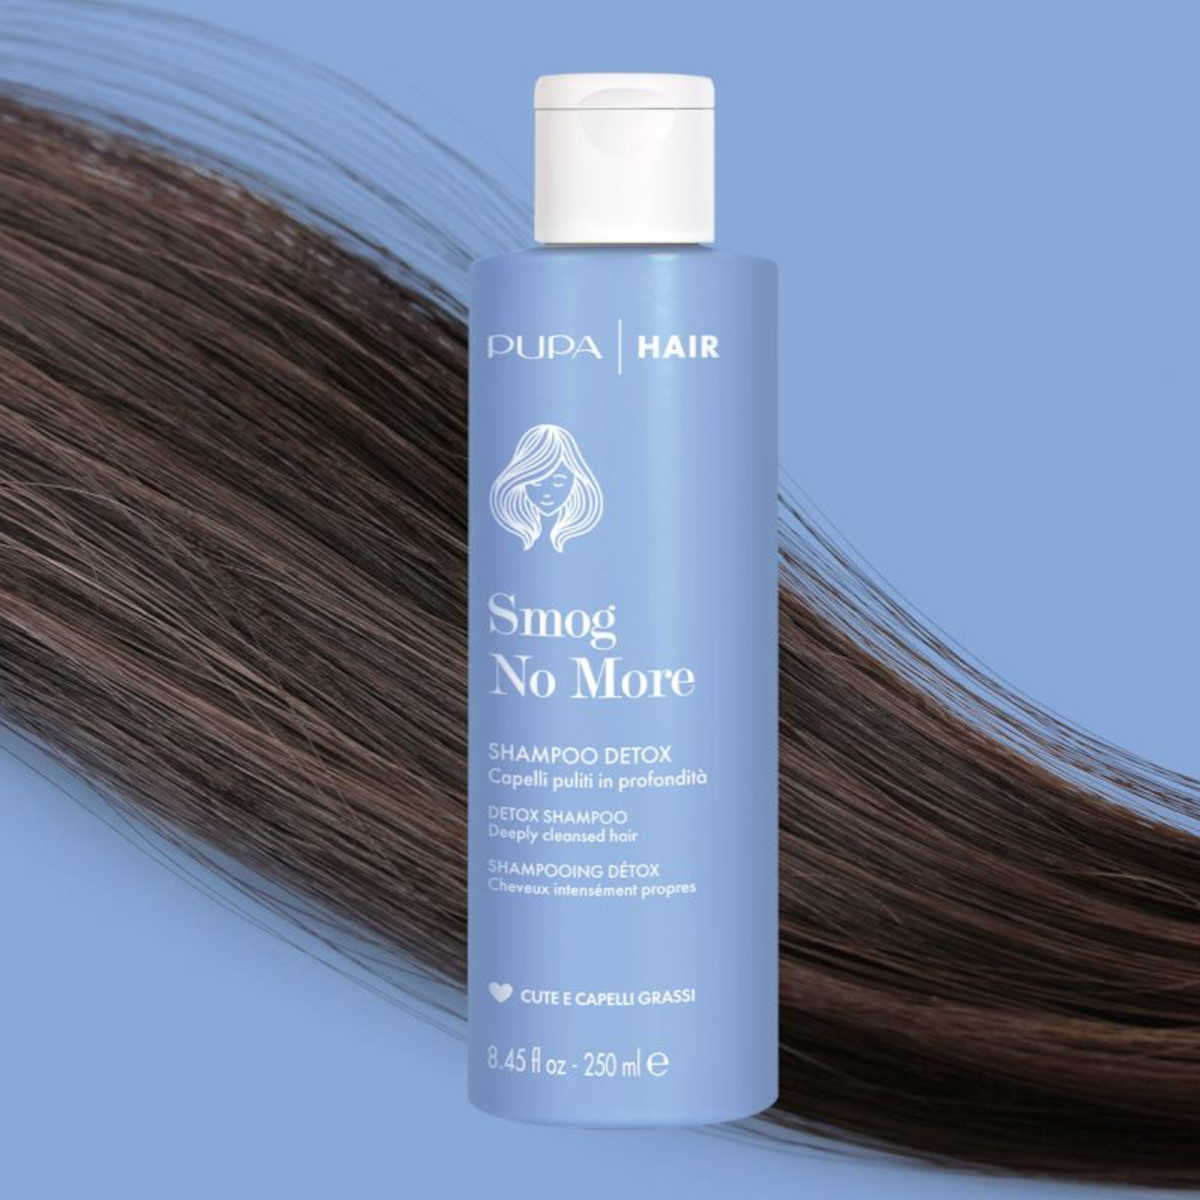 Pupa Hair: prodotti per la bellezza dei capelli - Beautydea